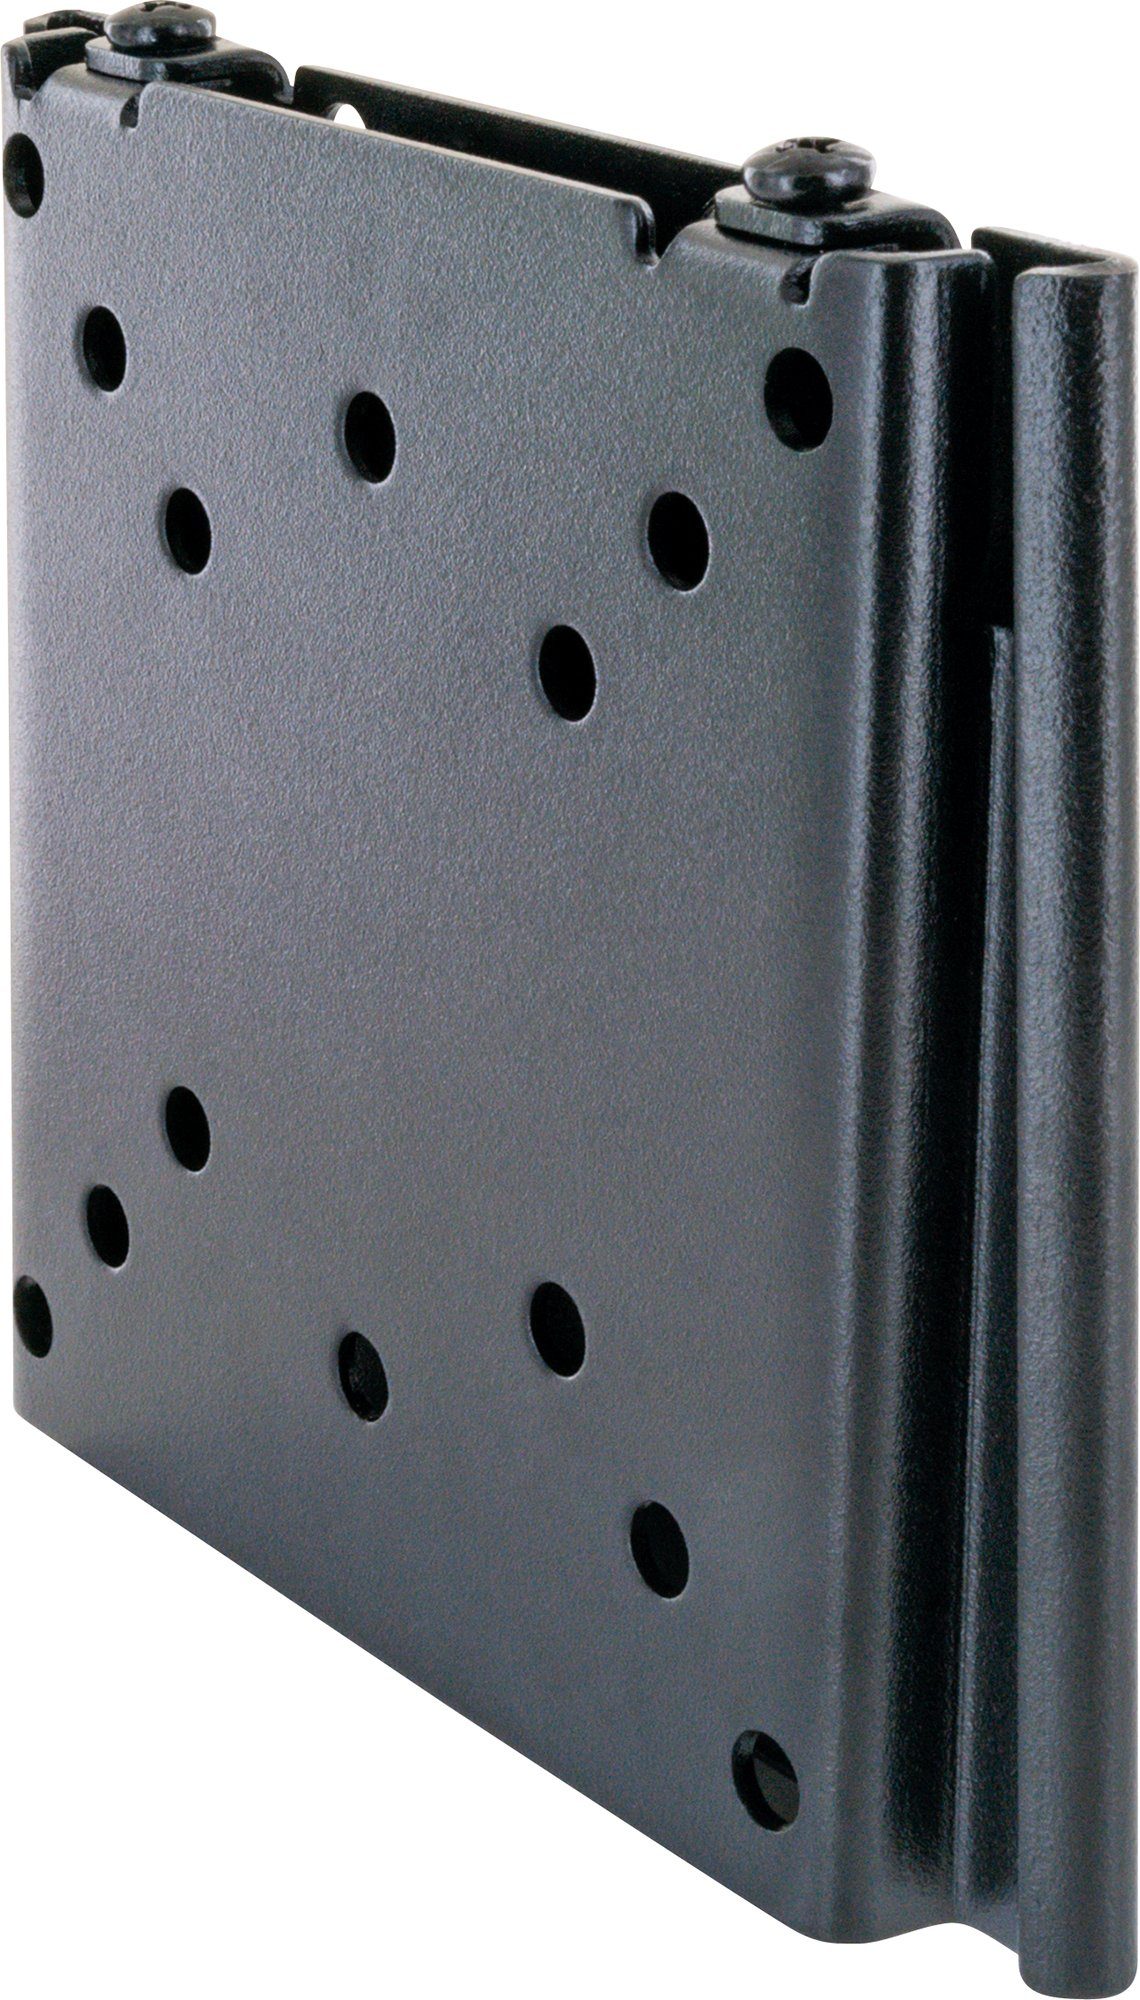 Schwaiger LWH1323 511 TV-Wandhalterung, bis 30kg, 27 Zoll, schwarz) fix, bis 100x100mm, (bis